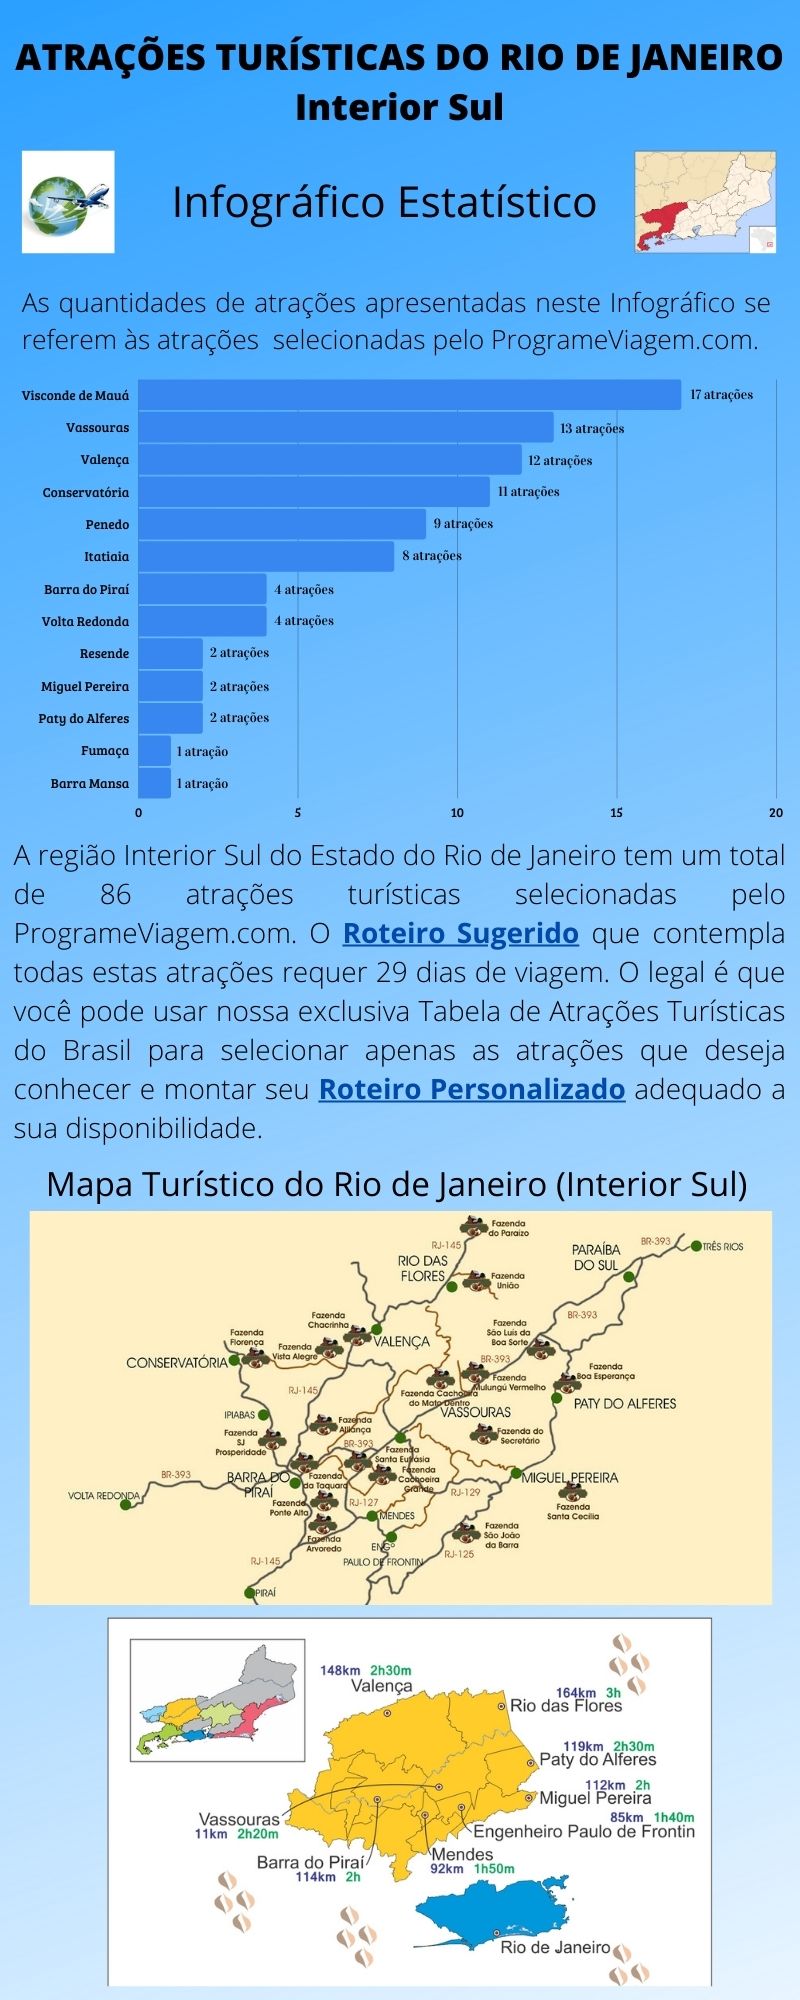 Infográfico Atrações Turísticas do Rio de Janeiro (Interior Sul)